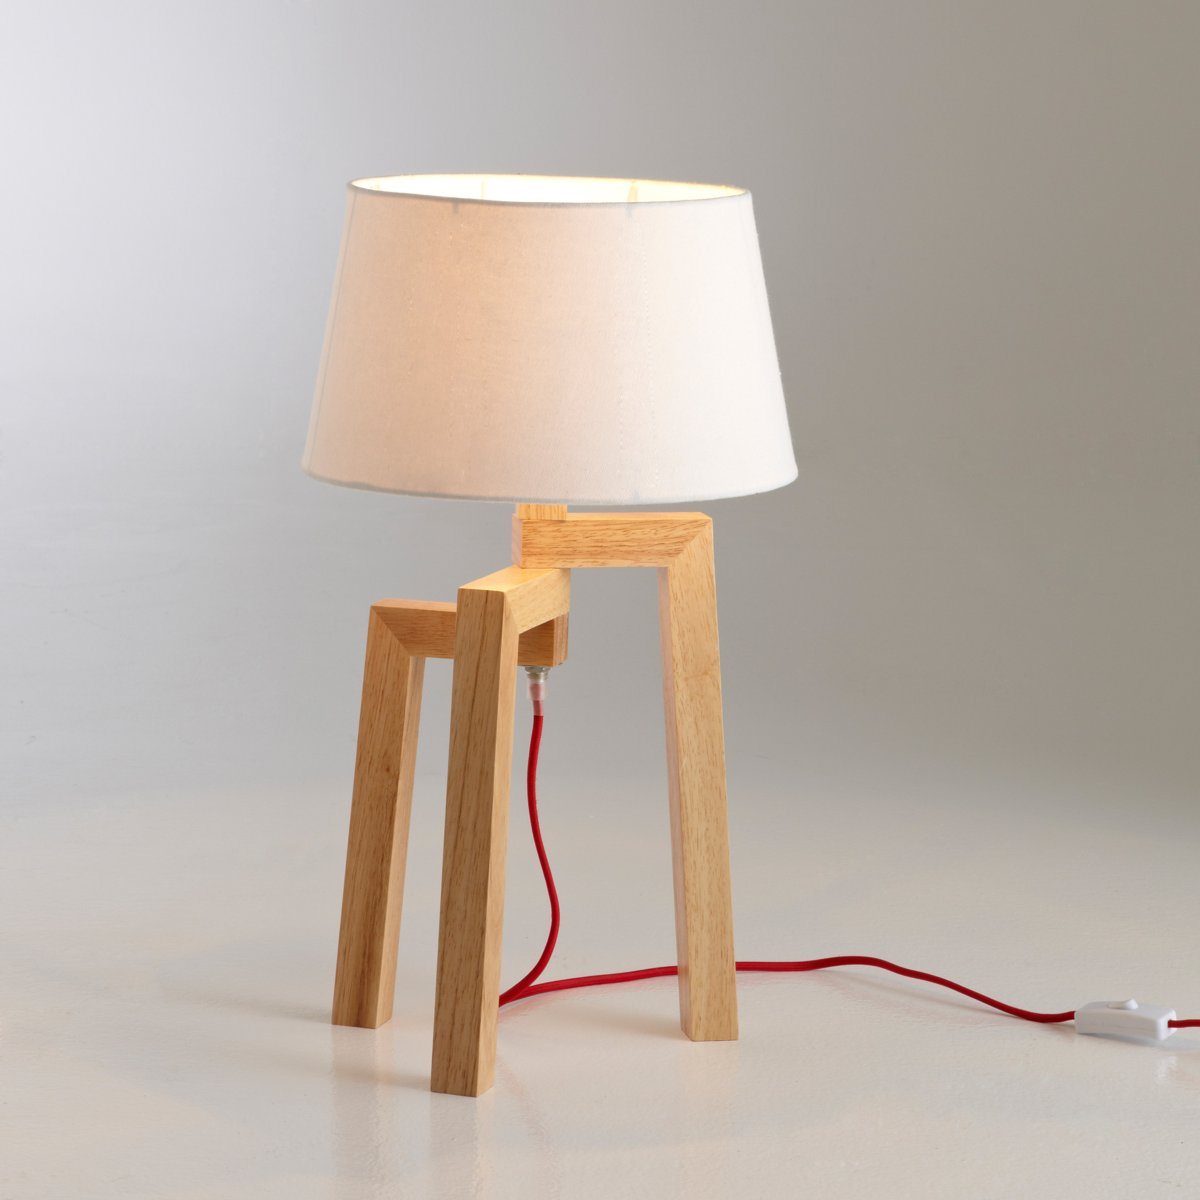 Pied de lampe en bois avec un fil rouge contrastant pas cher